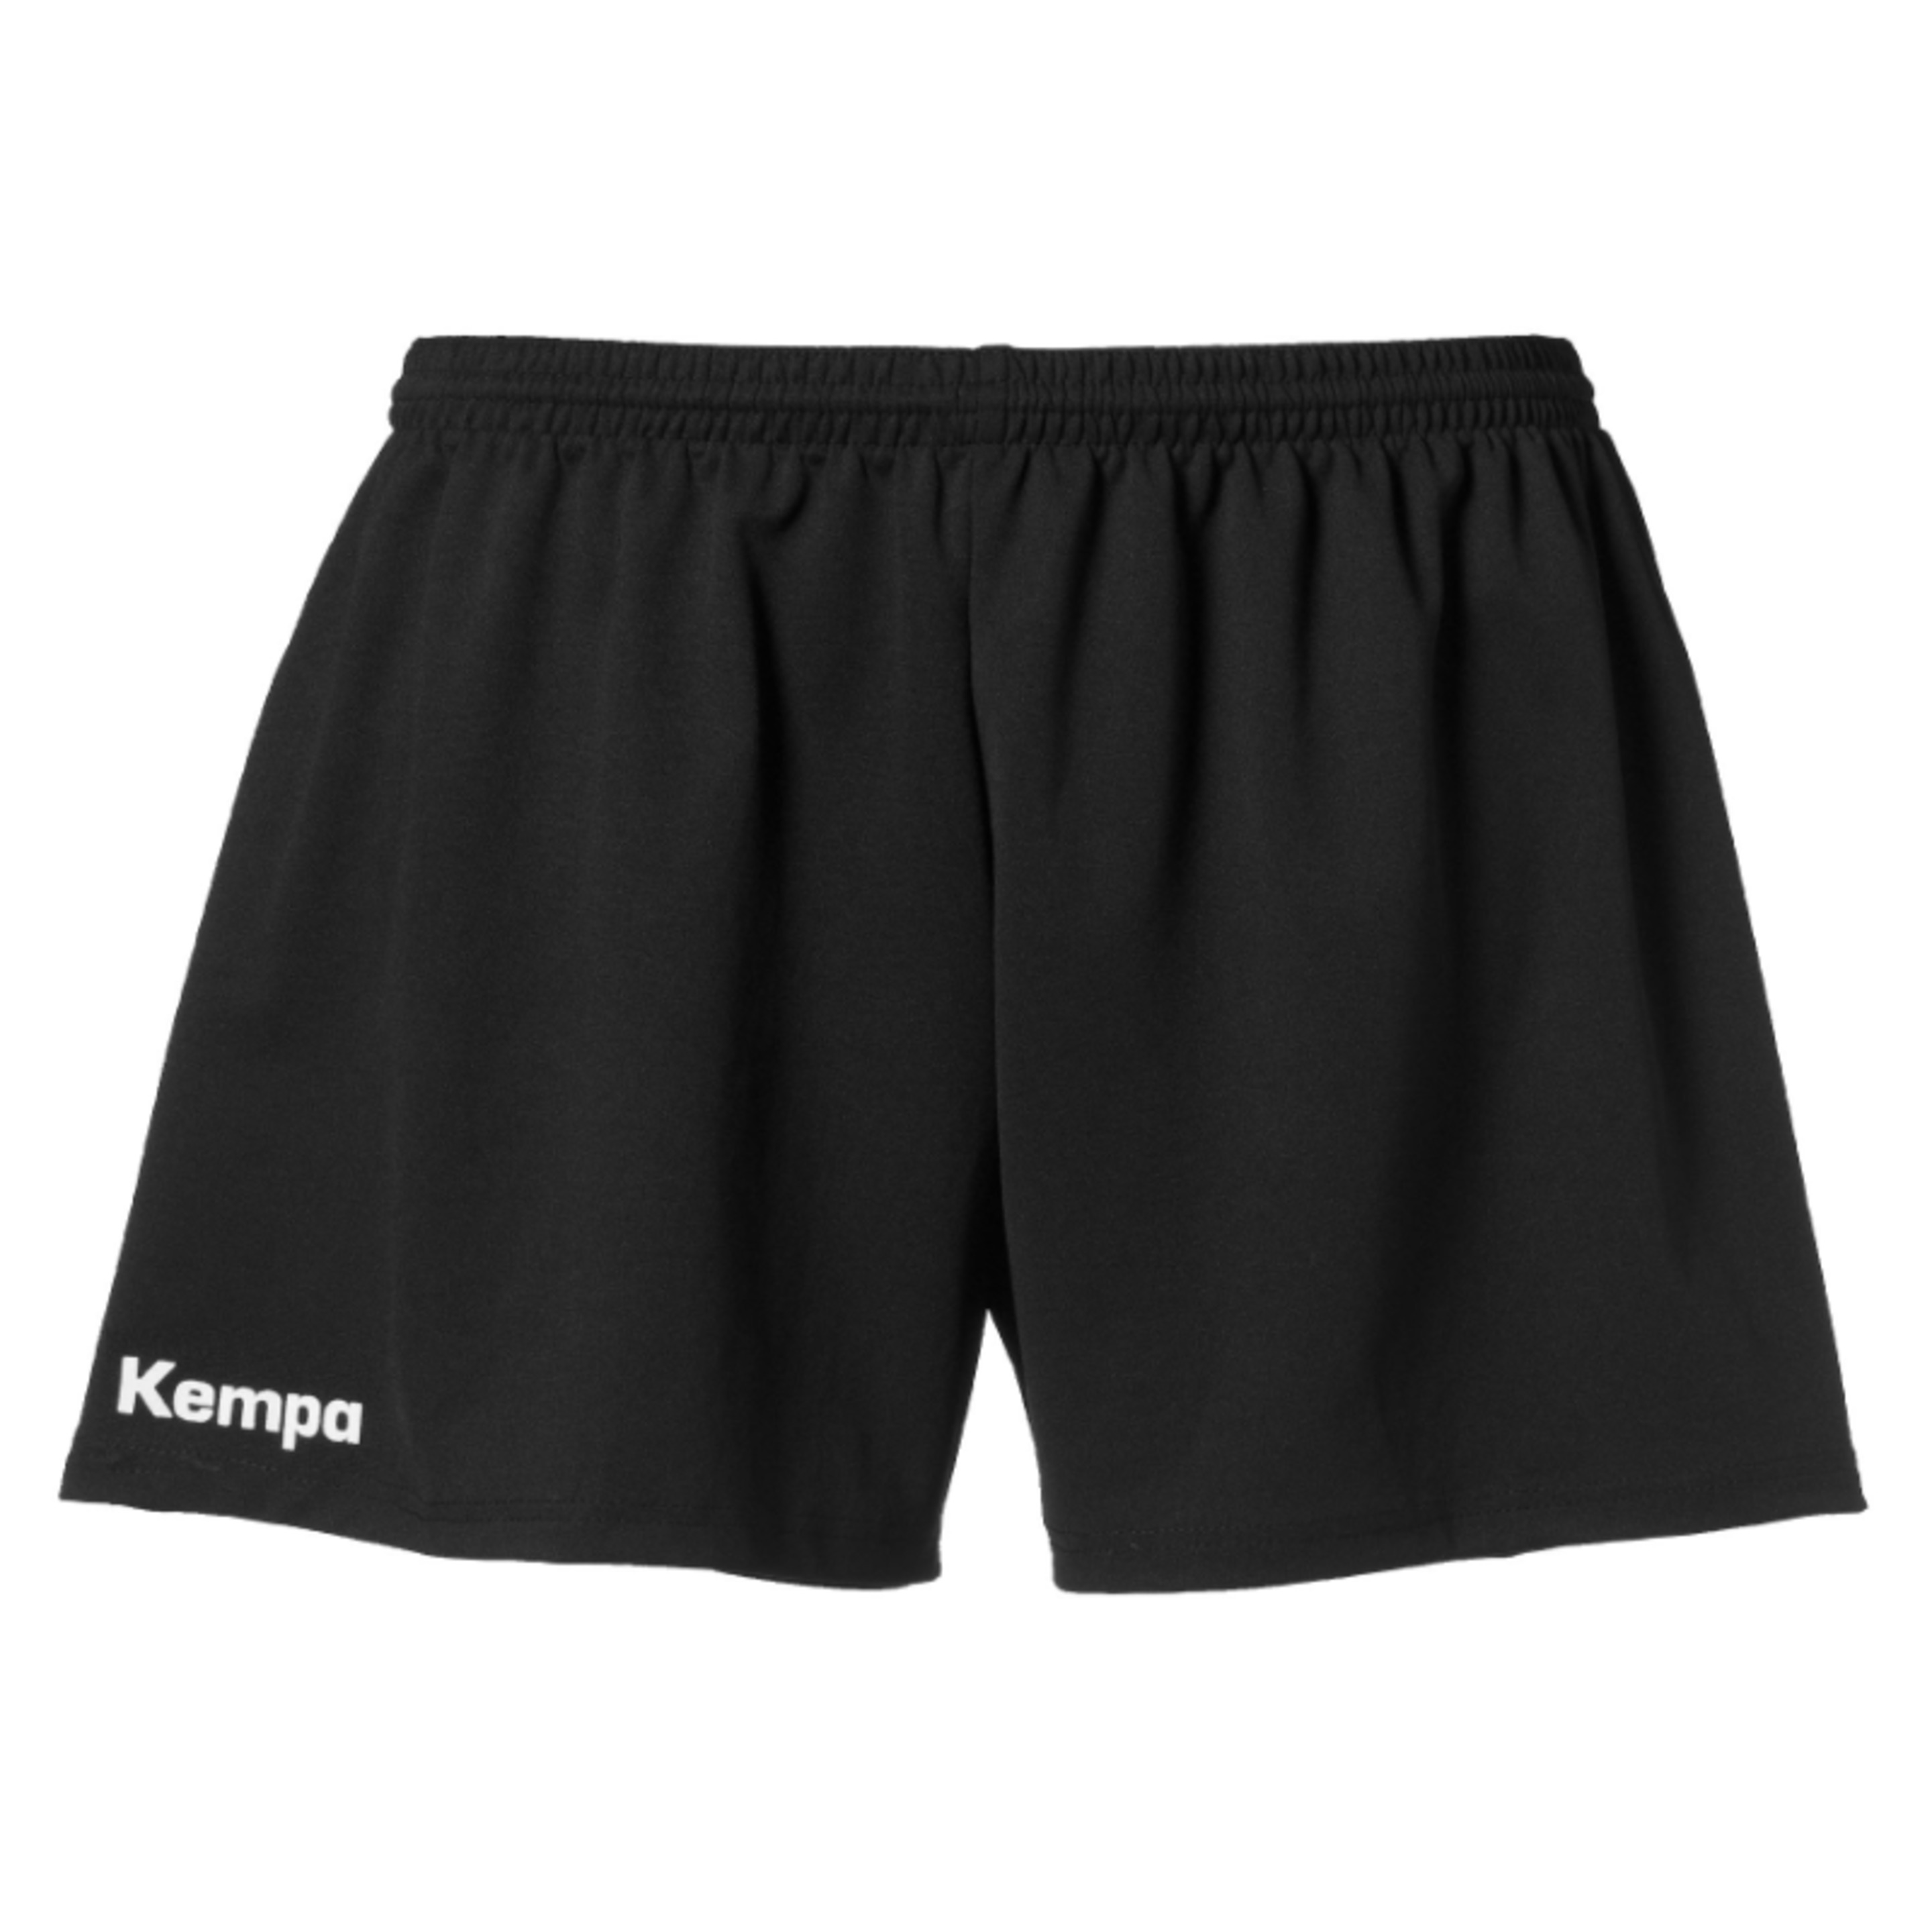 Classic Shorts De Mujer Negro Kempa - negro - 